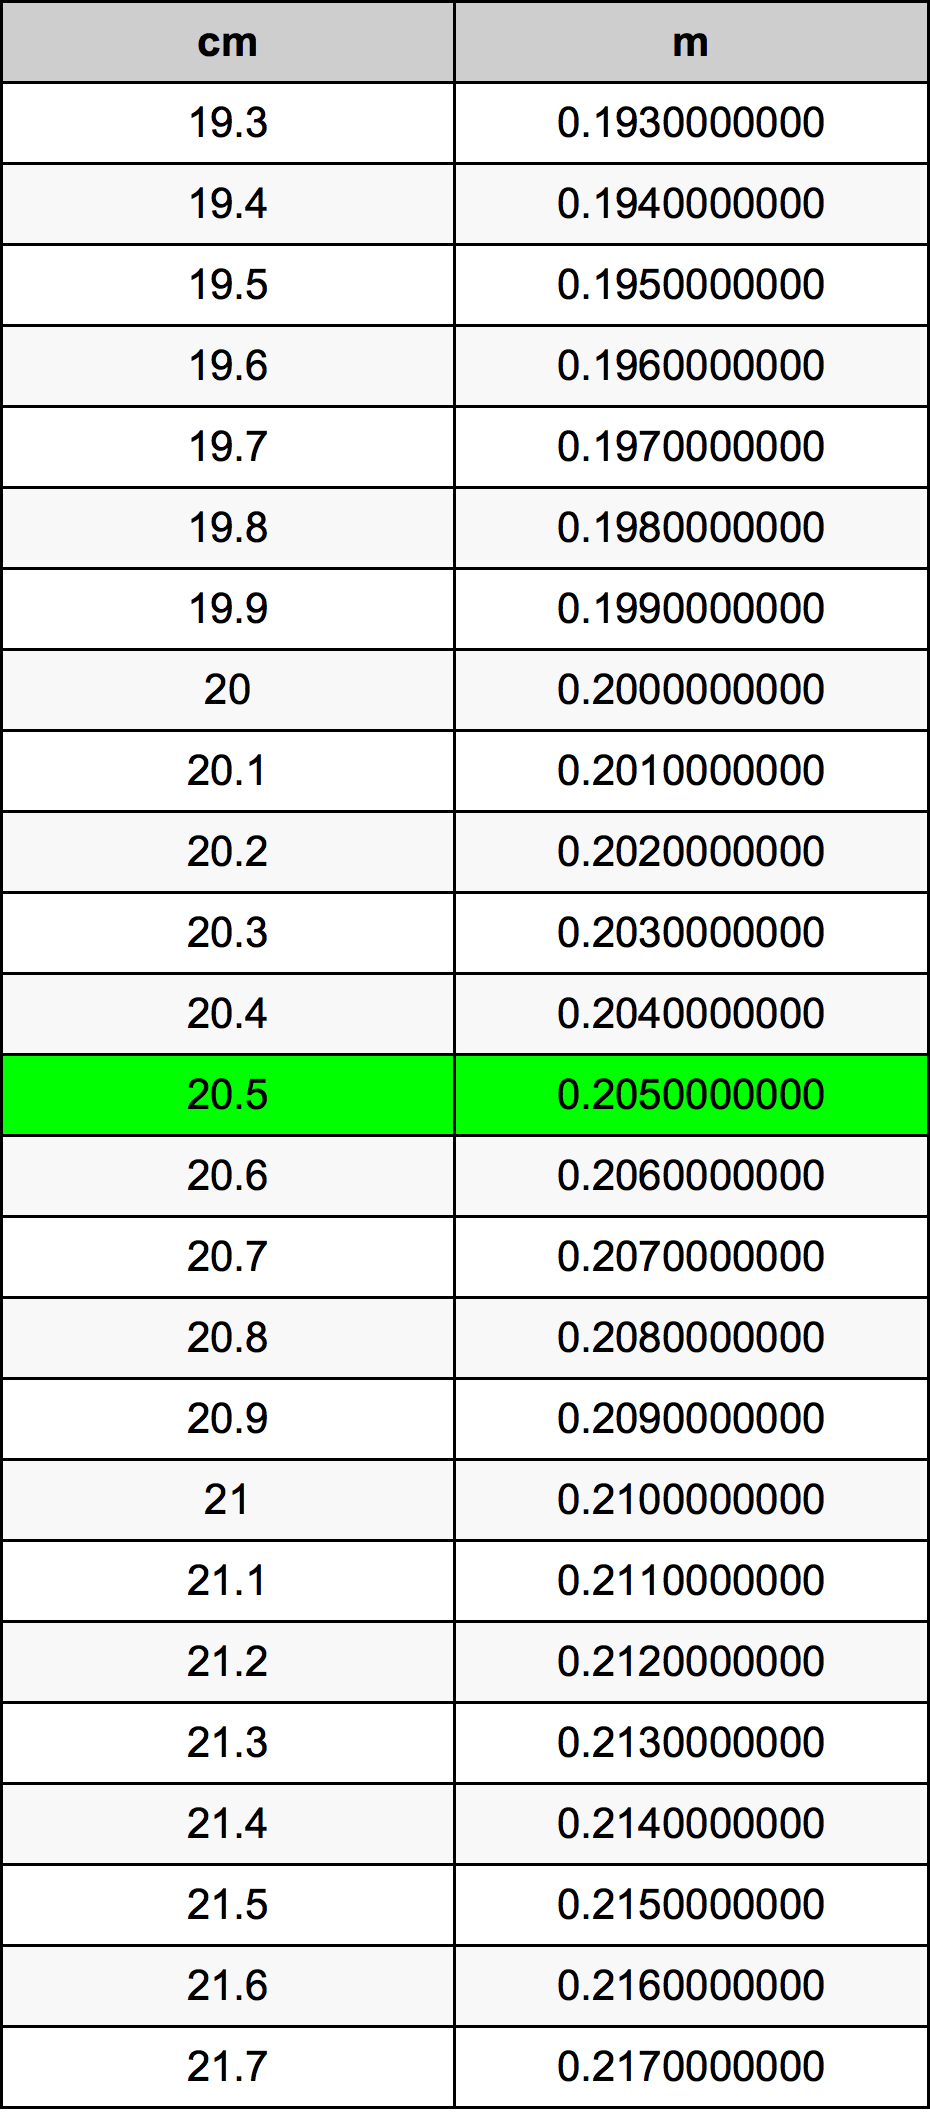 20.5 Centiméter átszámítási táblázat